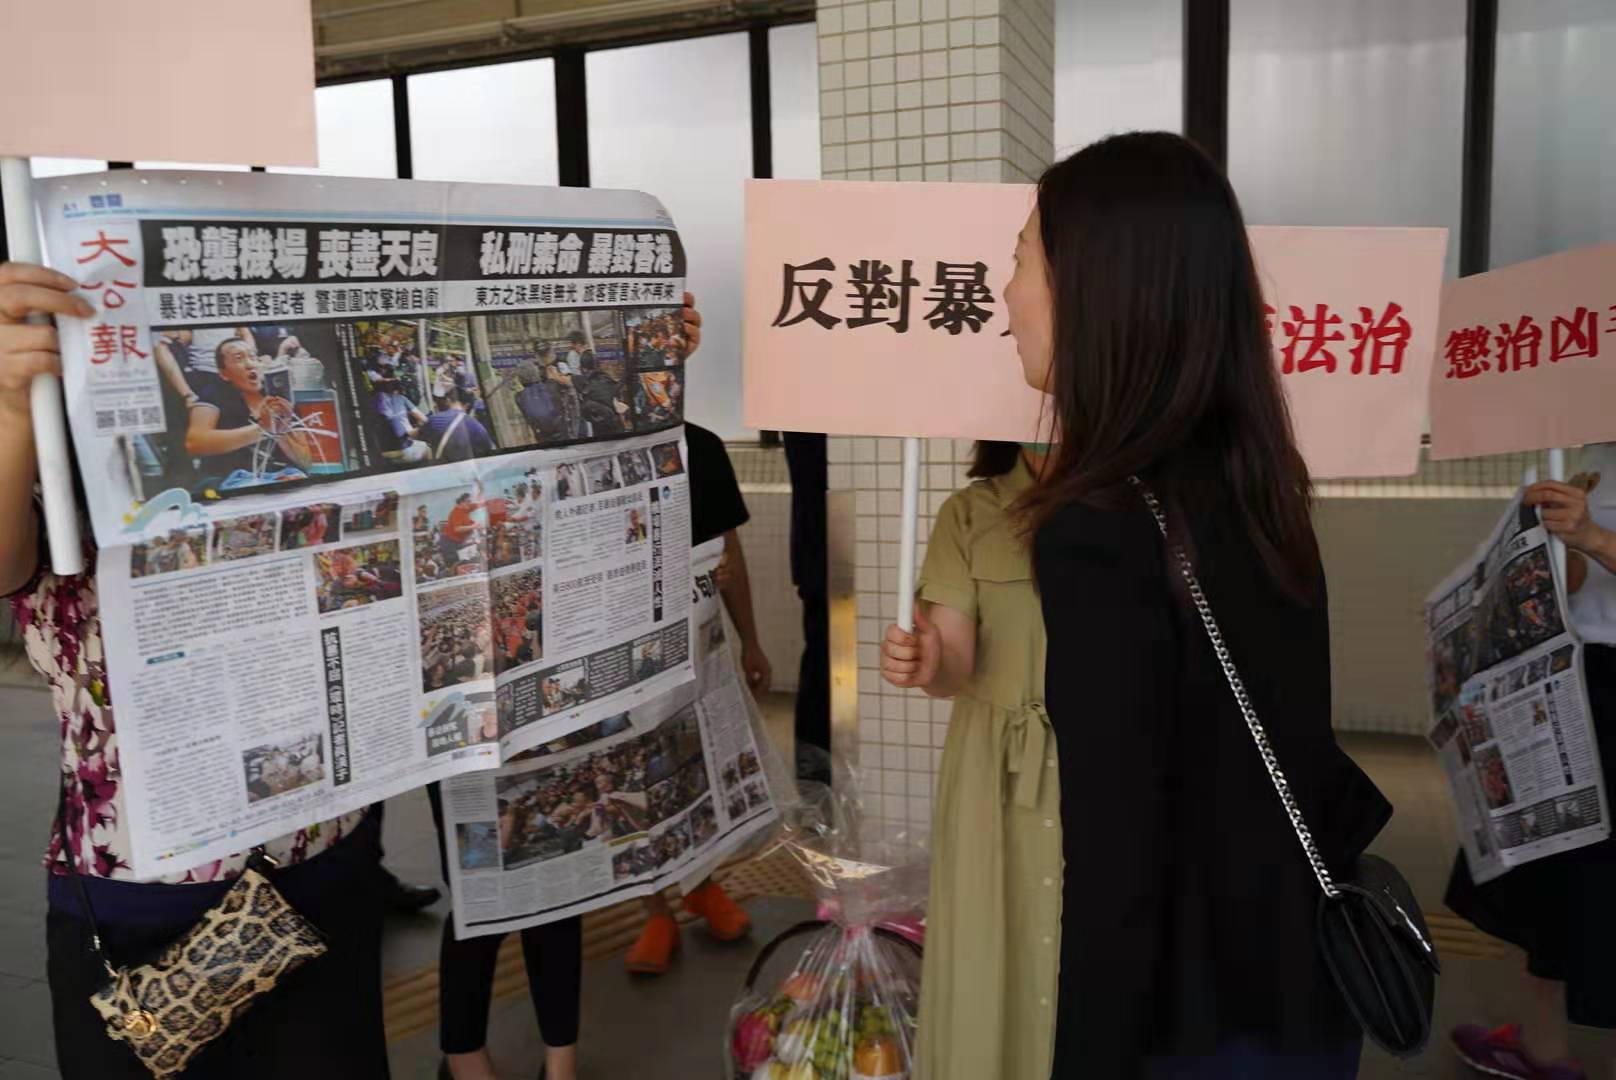 環球時報記者出院 香港市民讚「好樣的」